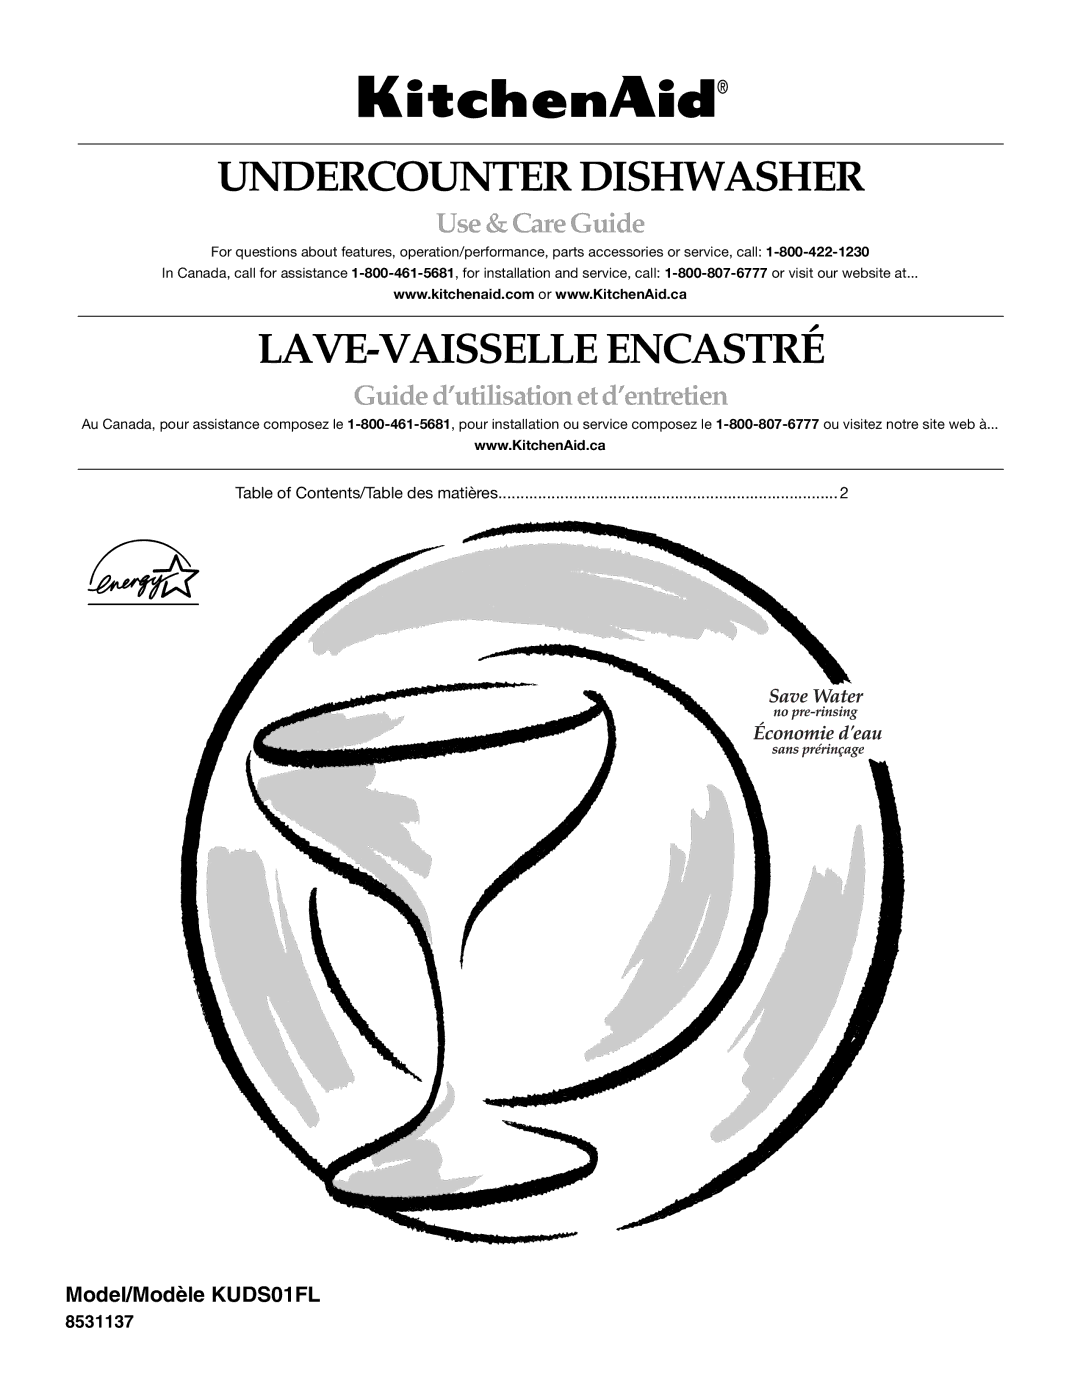 KitchenAid KUDS01FL manual Undercounter Dishwasher, LAVE-VAISSELLE Encastré, Use &CareGuide 